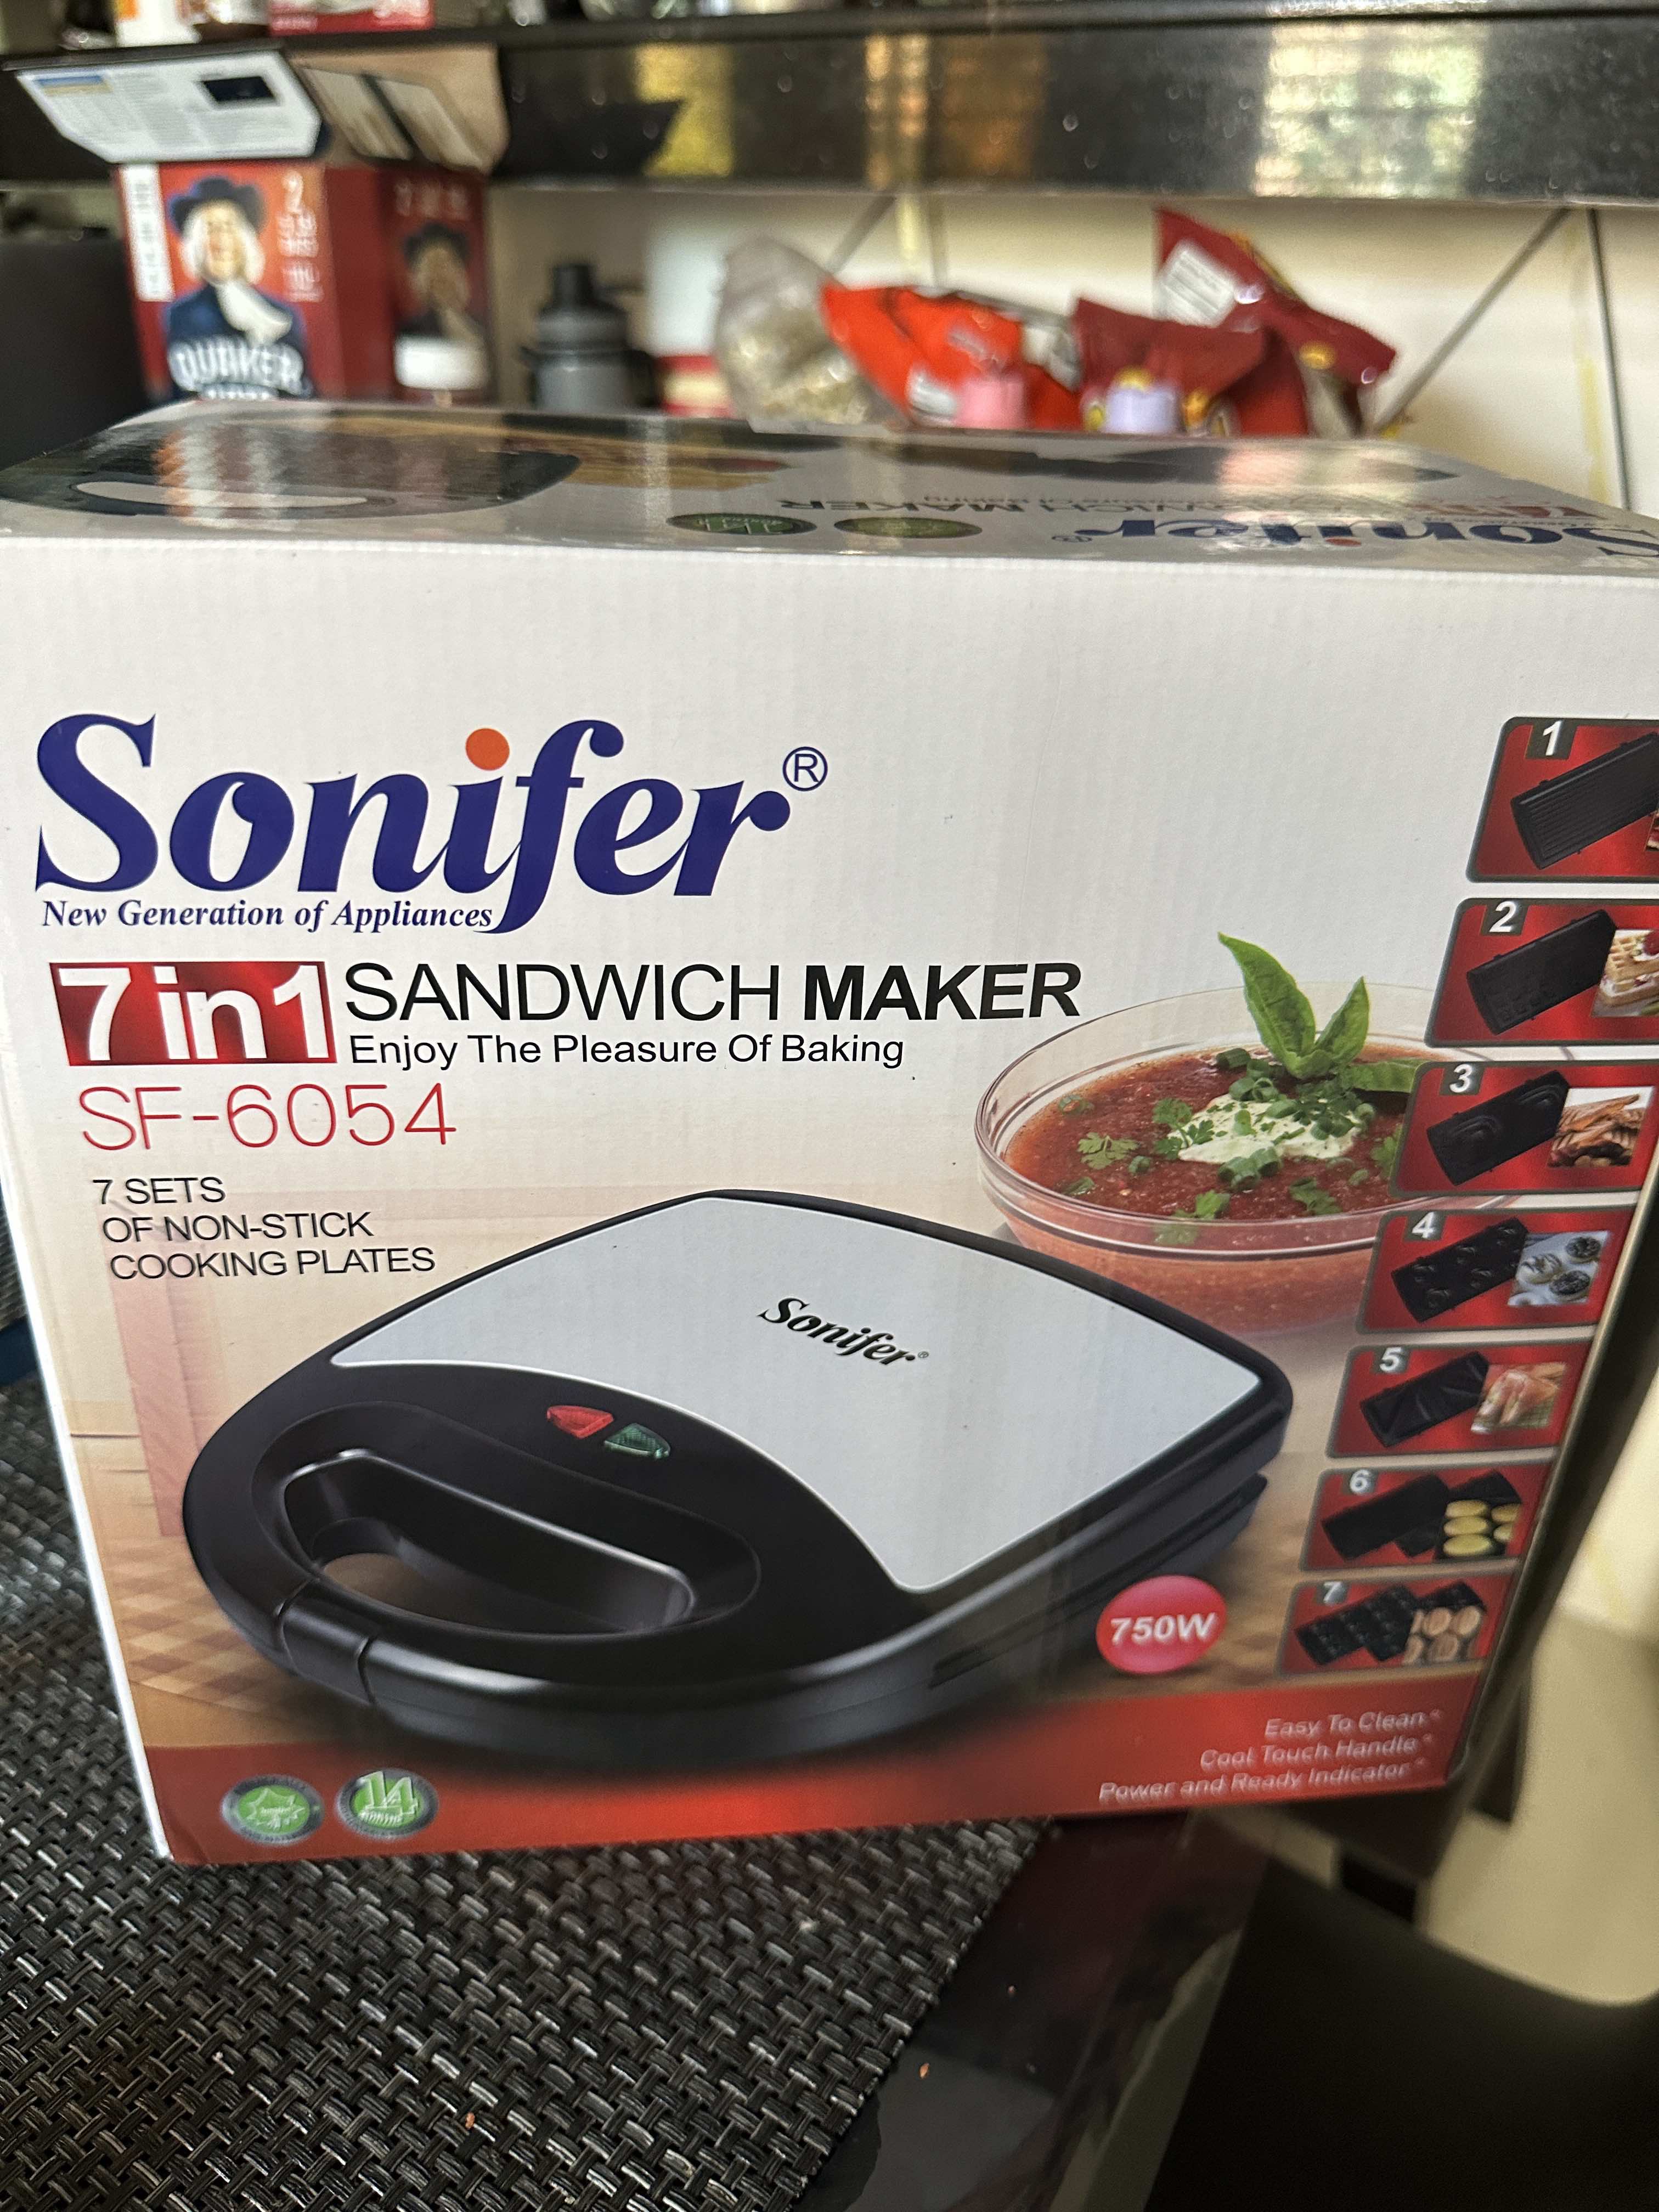 Sonifer Sandwich Maker SF-6122 .Detachable waffle maker 7 in 1